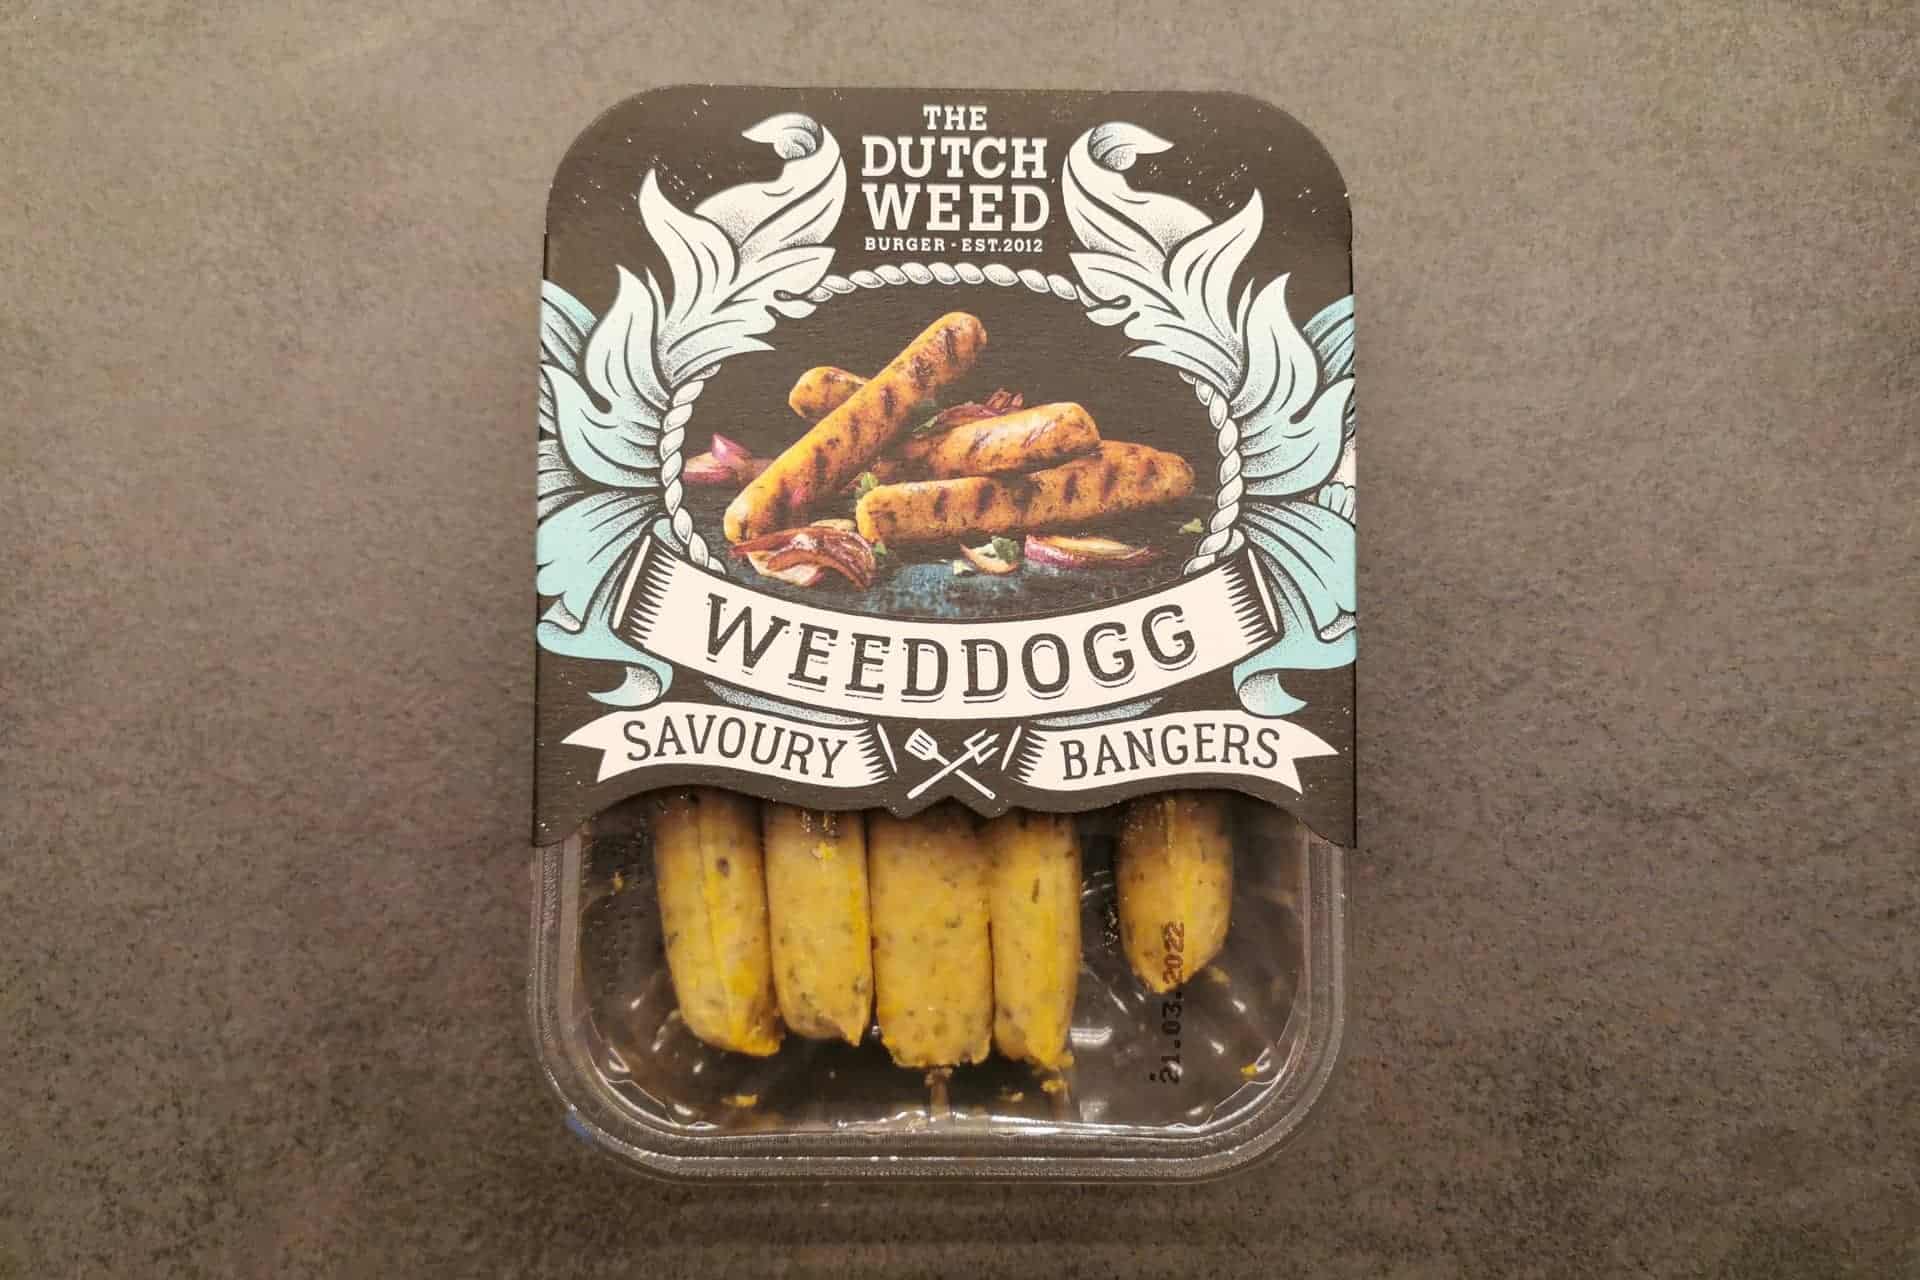 The Dutch Weed: Weeddogg